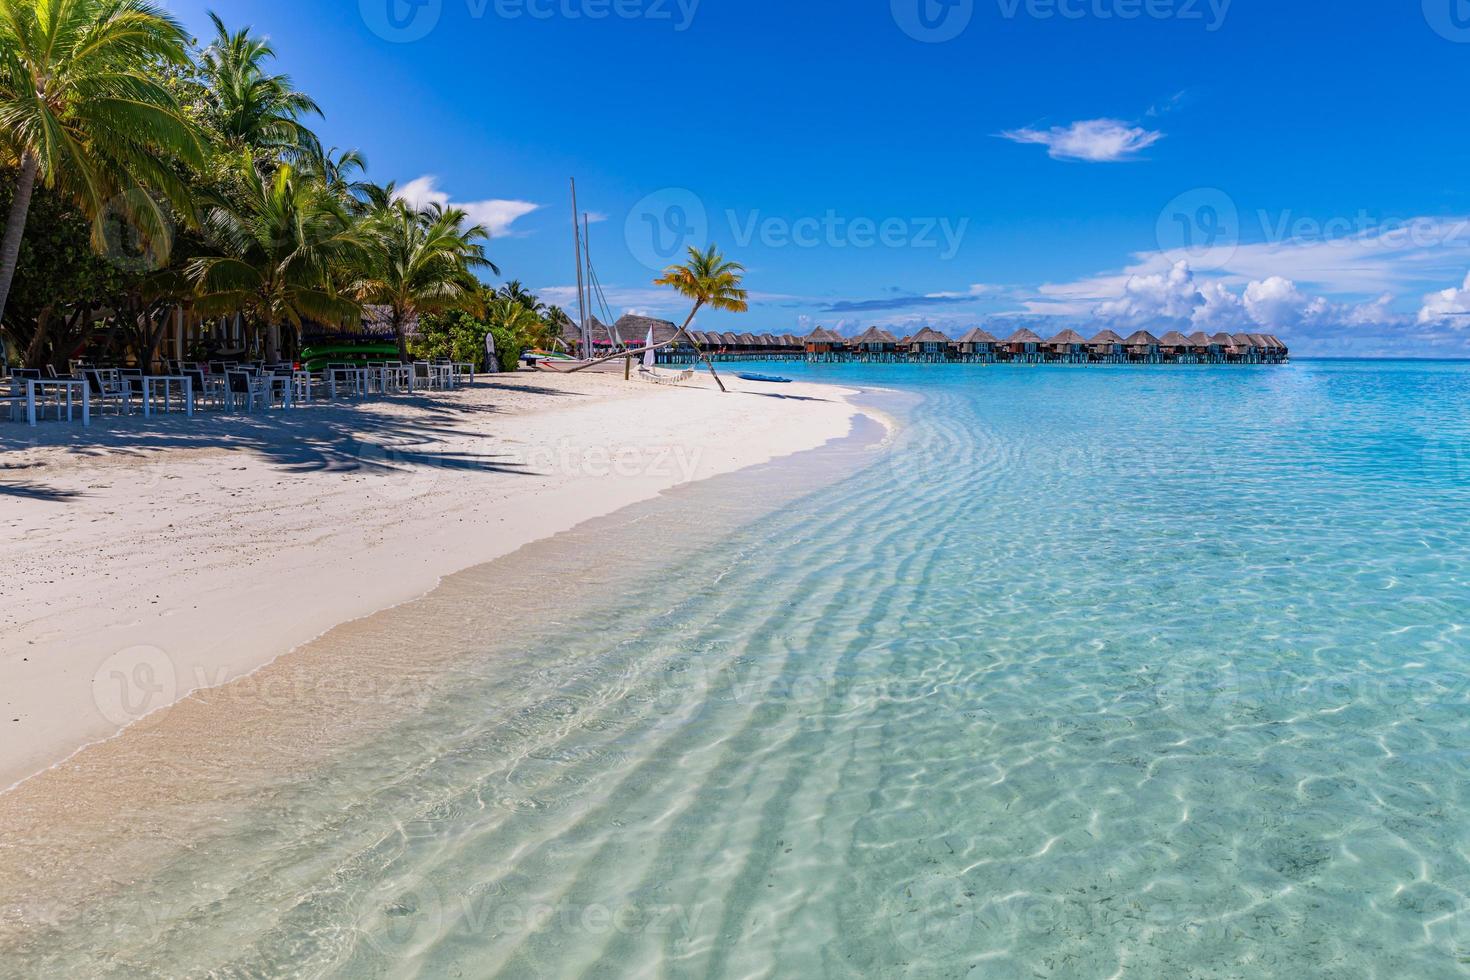 belle plage de sable blanc, lagon océan turquoise, palmiers verts et ciel bleu avec nuages aux beaux jours. paysage tropical d'été, vue panoramique. plage tropicale pendant les vacances aux maldives photo